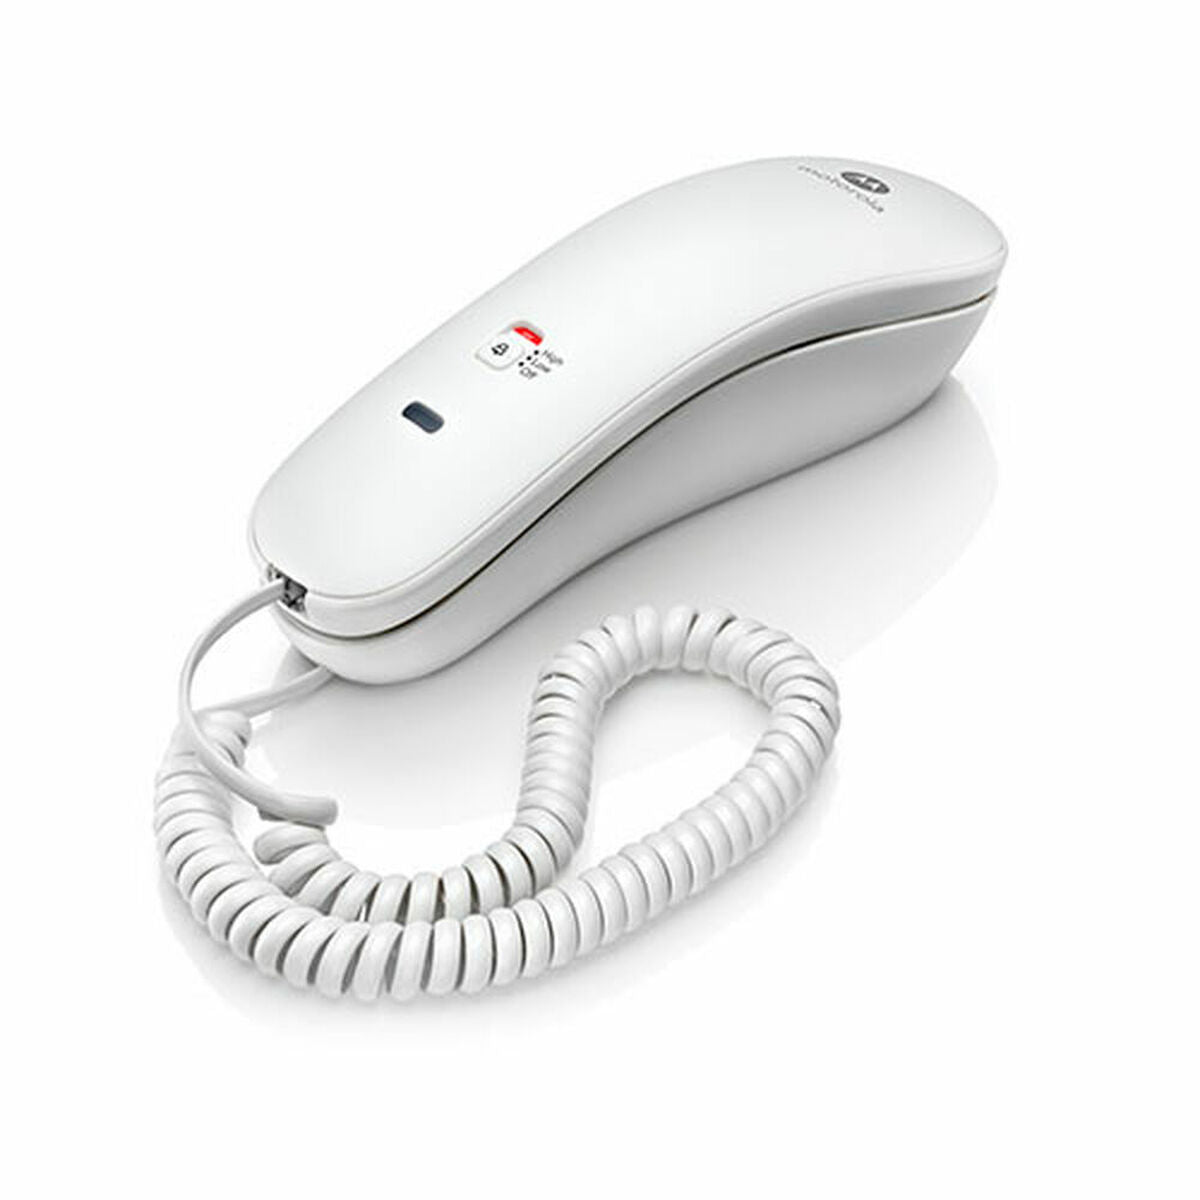 Landline Telephone Motorola 5.05537E+12 LED White